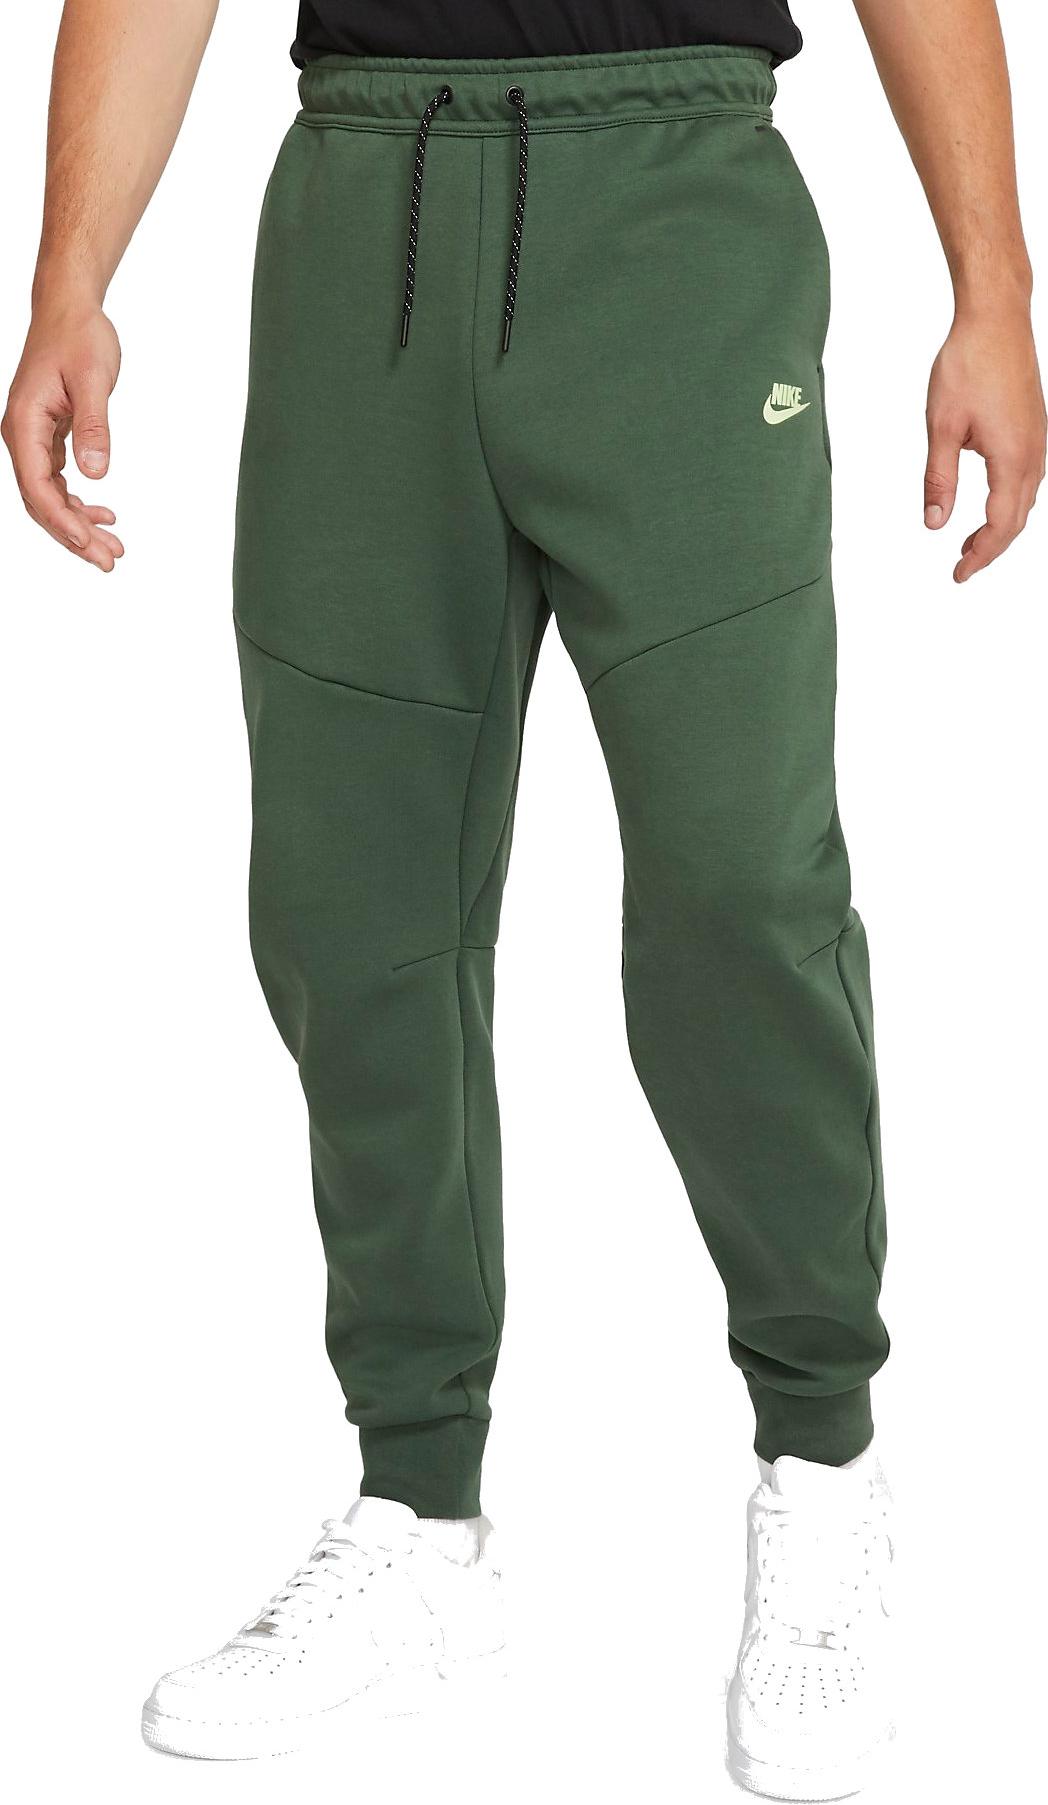 Pantalón Nike M NSW TECH FLEECE PANTS